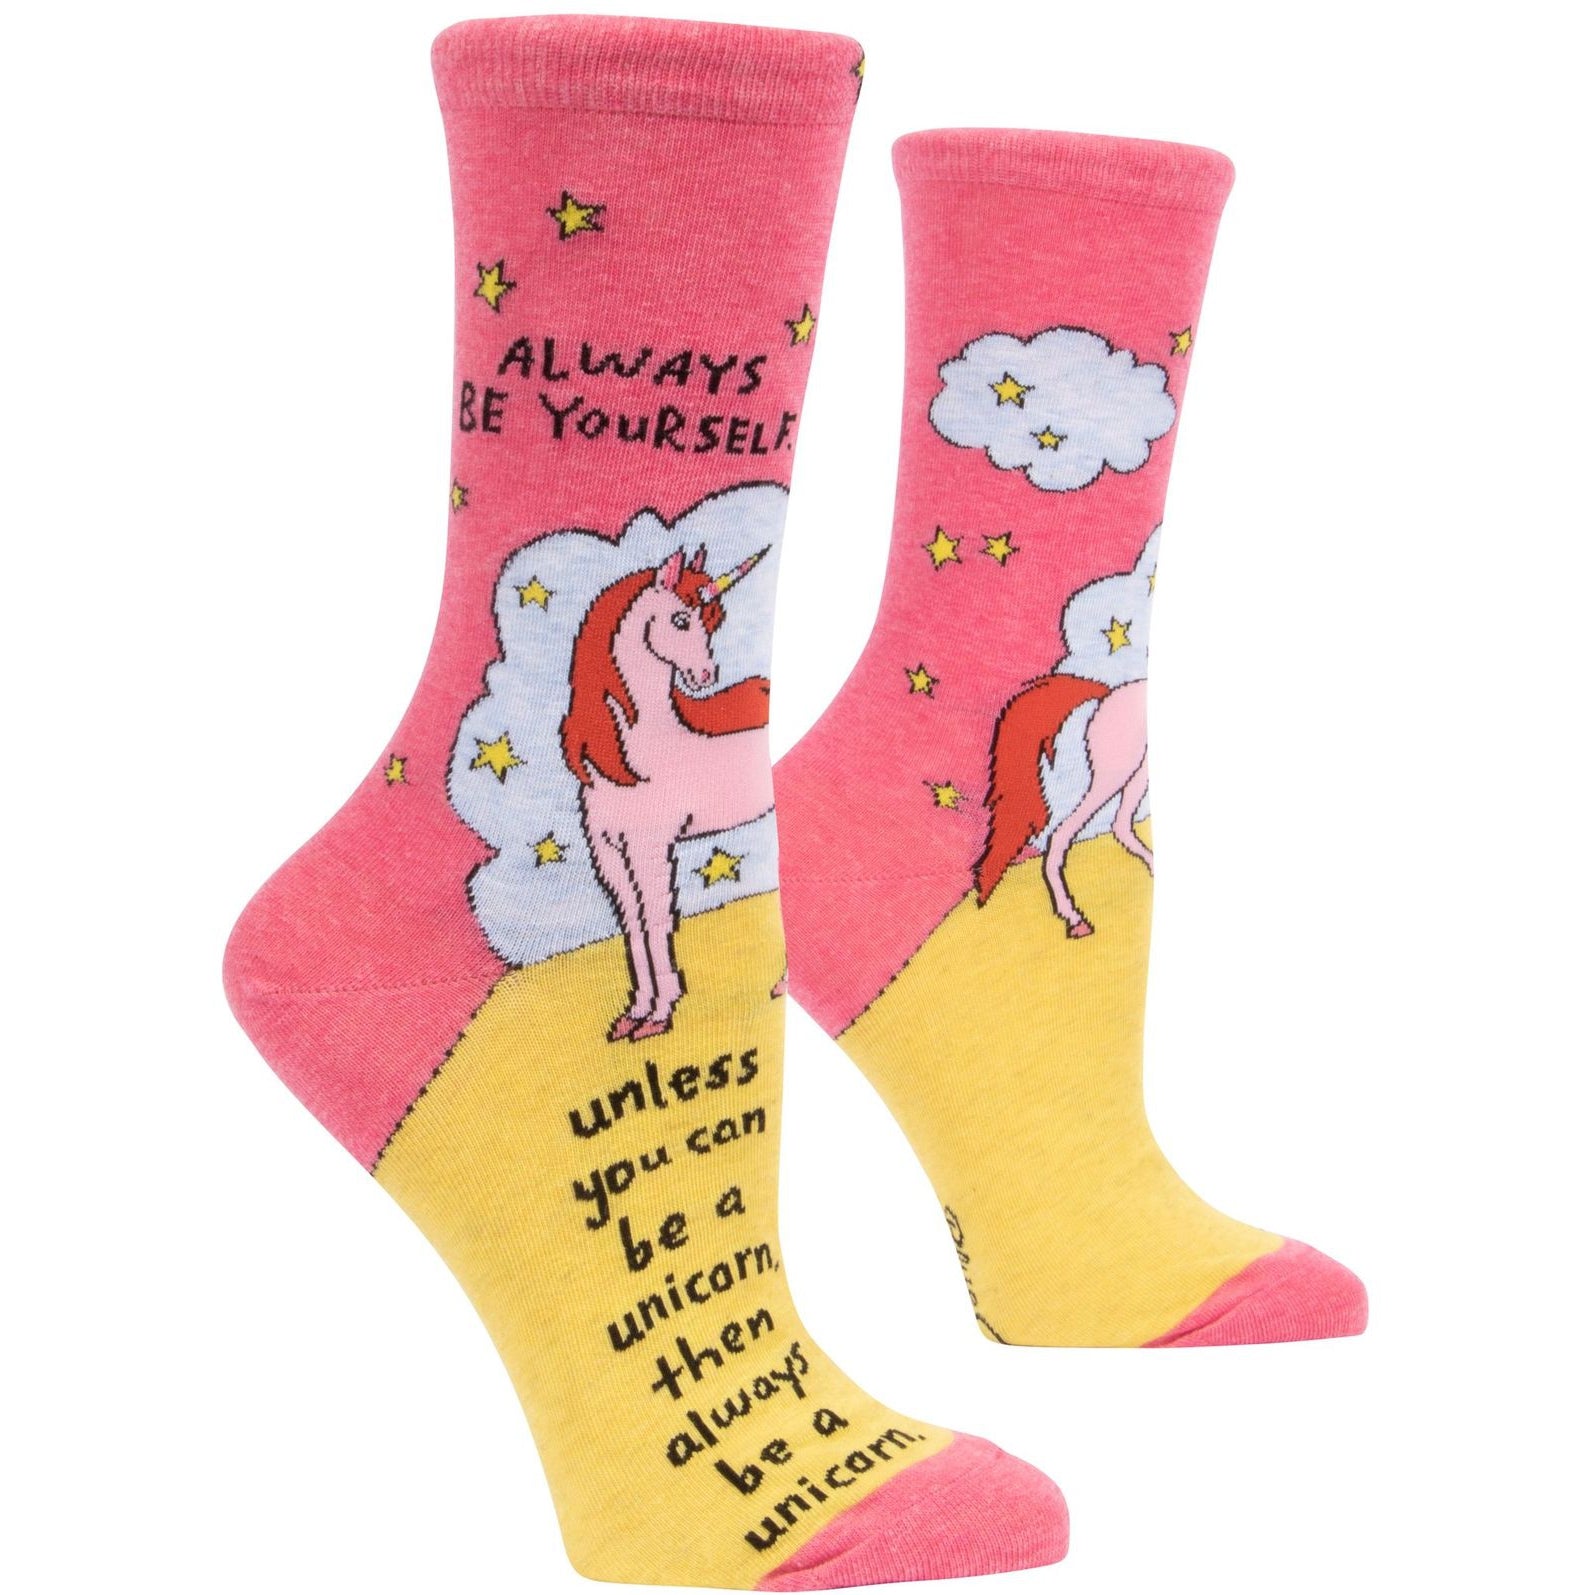 Always Be a Unicorn Women's Crew Socks in Pink